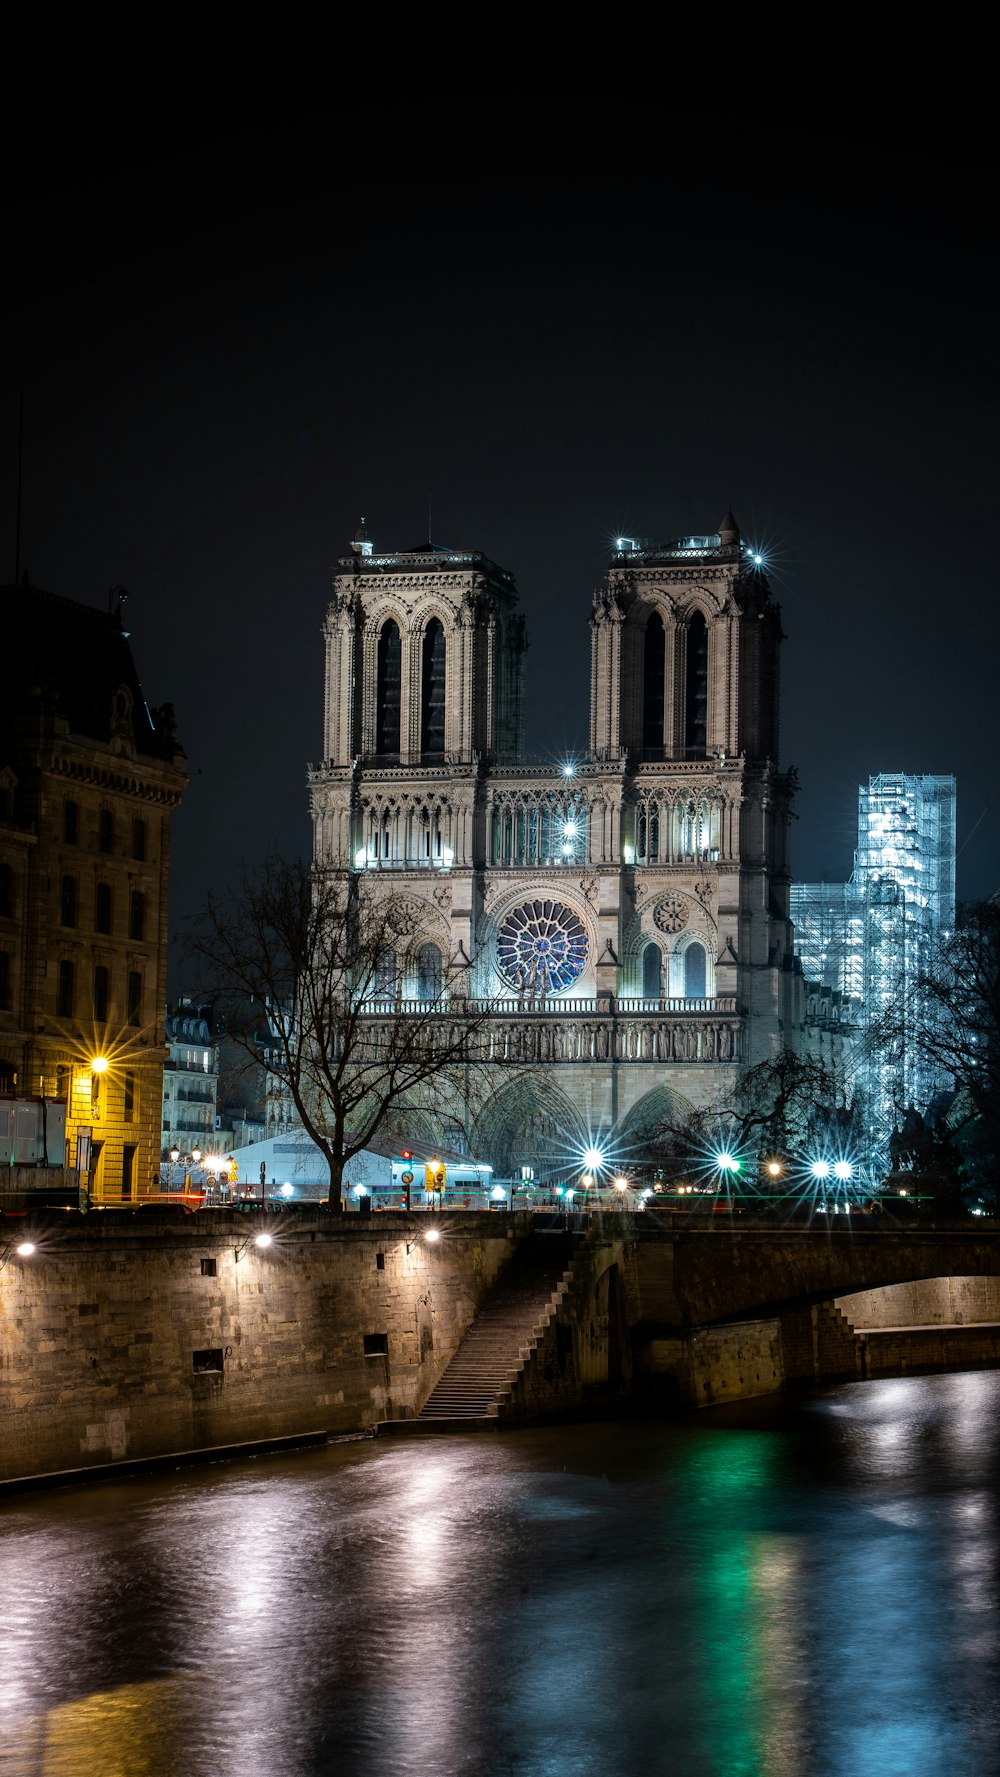 Una grande cattedrale illuminata di notte su un fiume